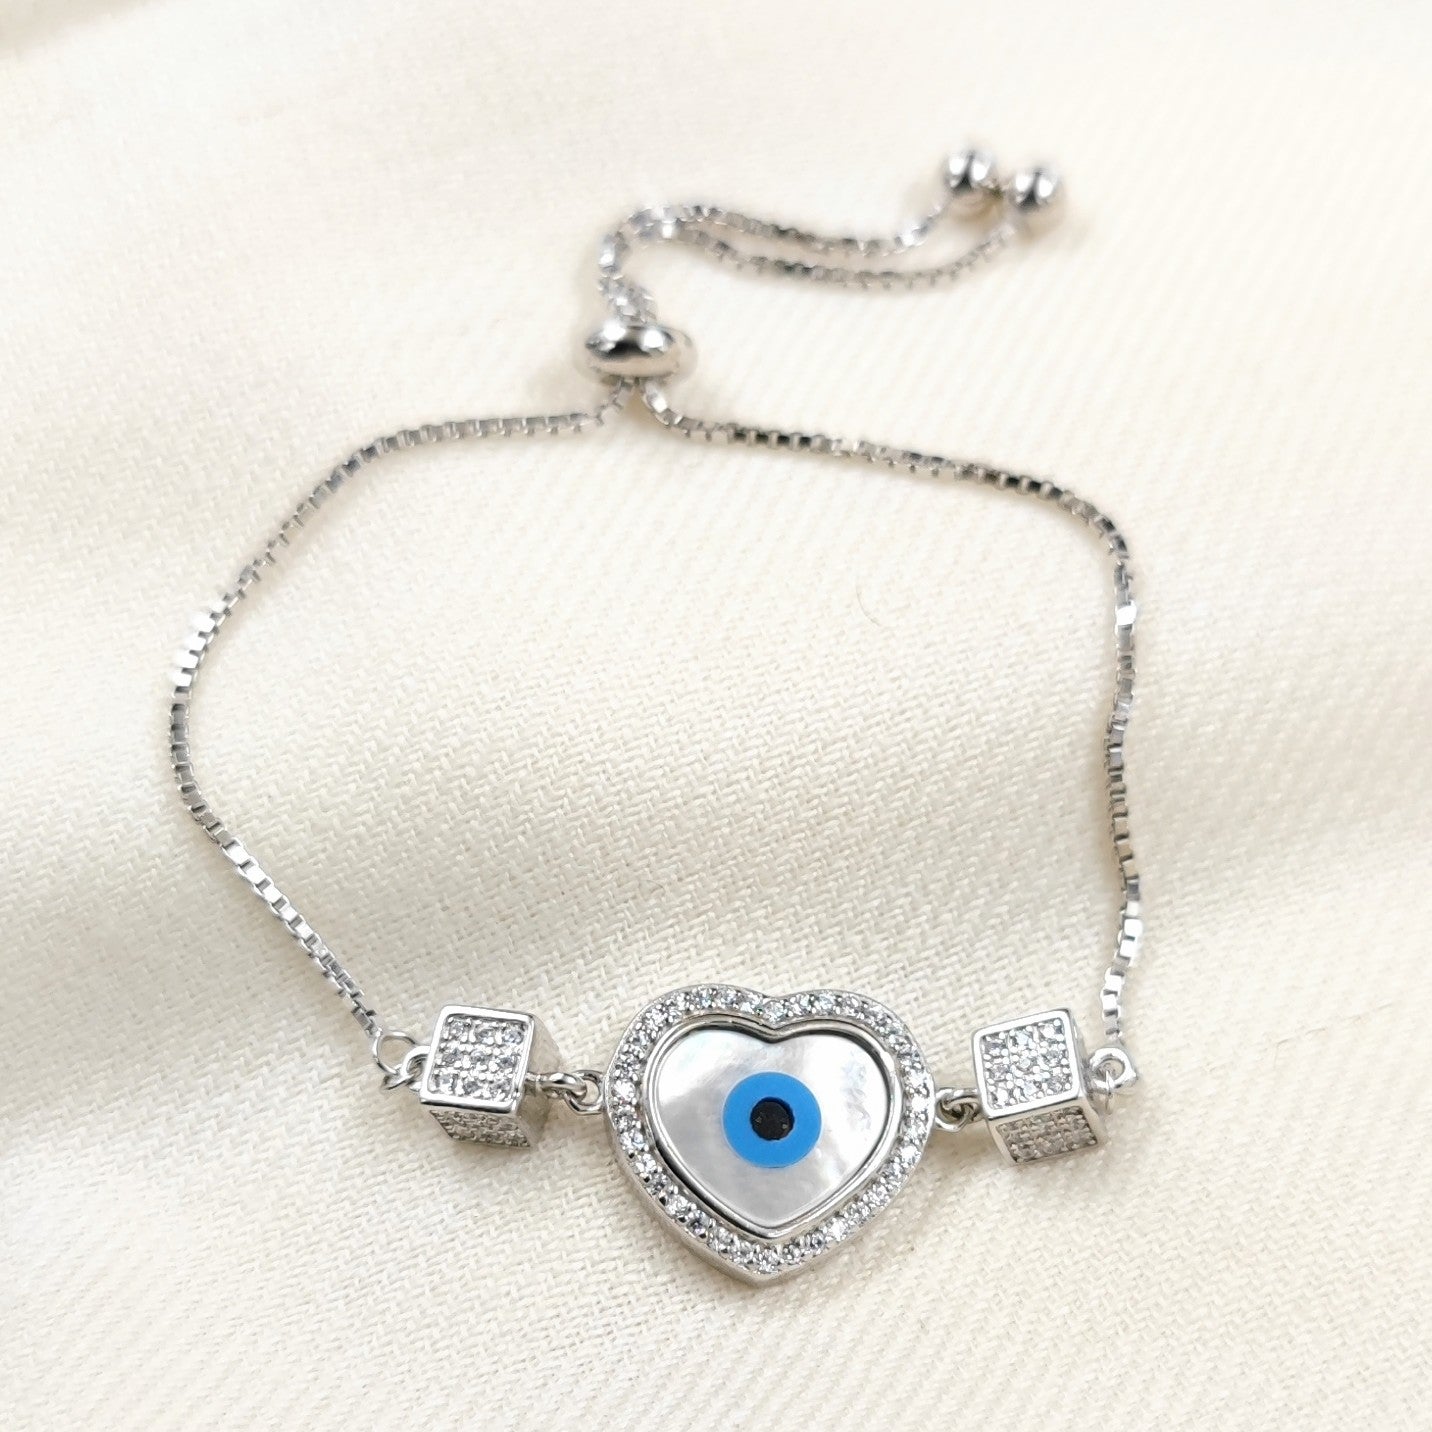 Silver Jewelry Bracelets by Jauhri 92.5 Silver - Slider Evil Eye Heart Cube Bracelet